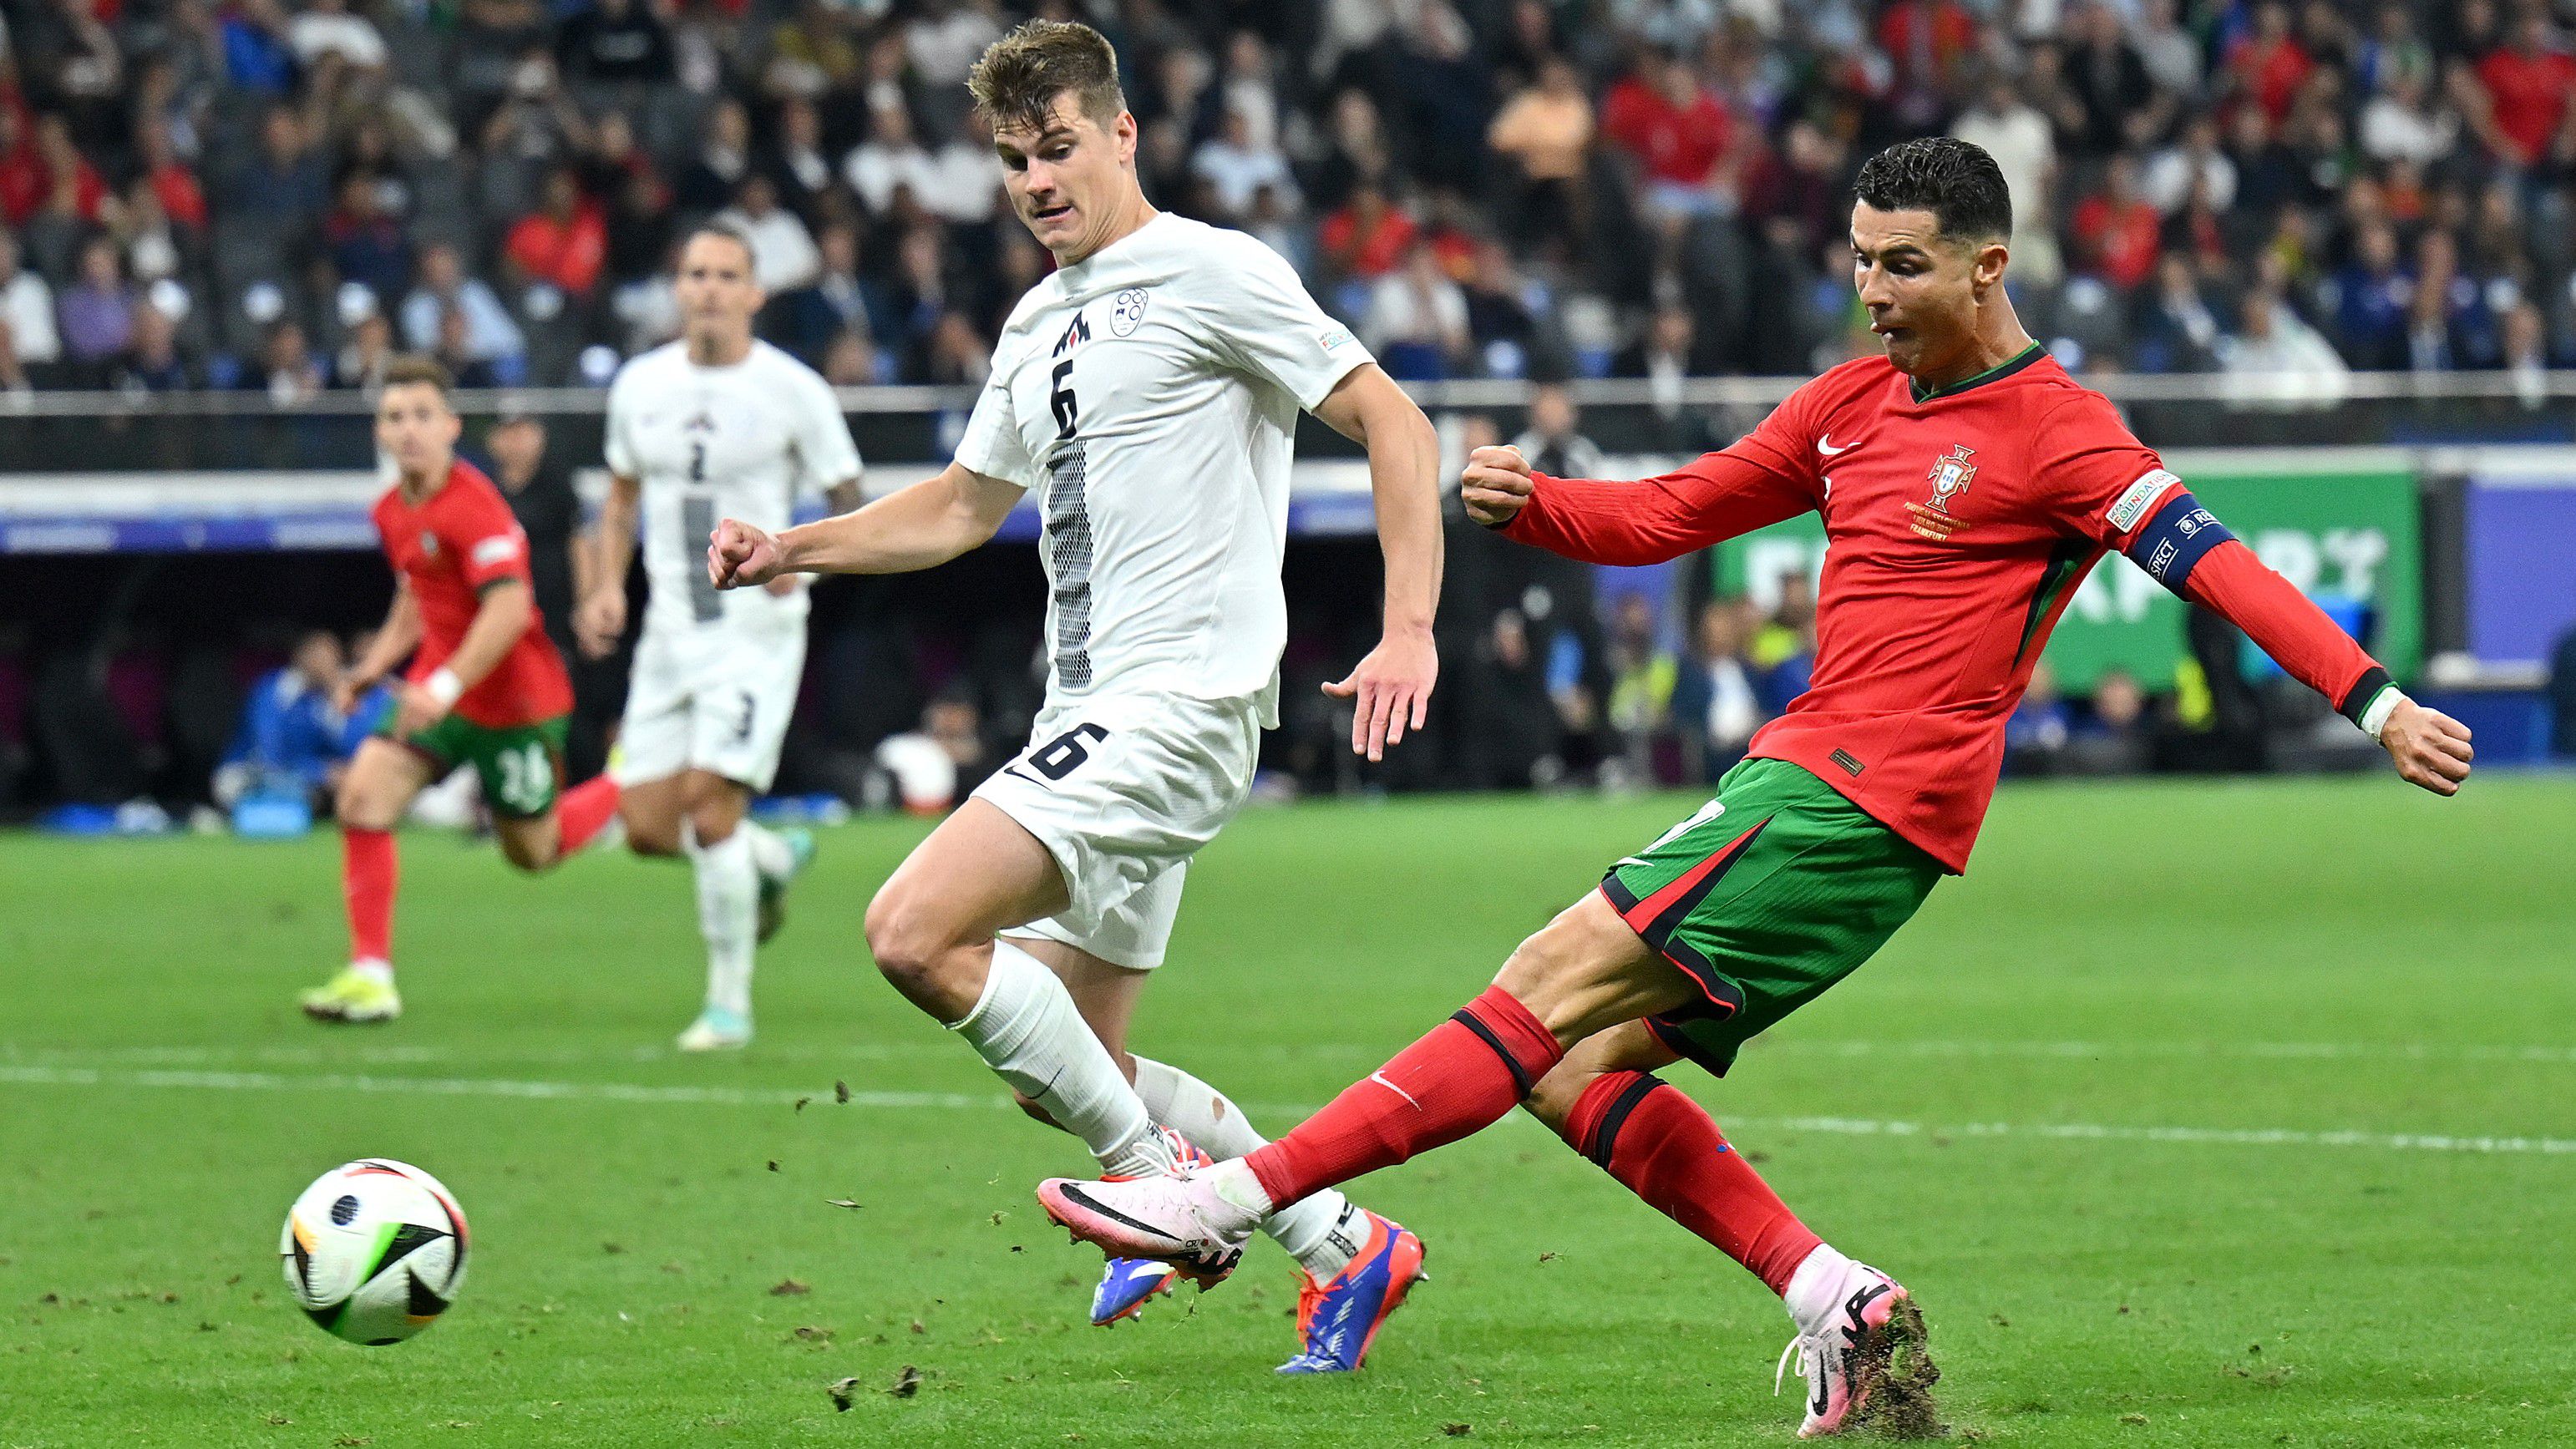 Élő: C. Ronaldo lábában maradt a győztes gól, jöhet a hosszabbítás!